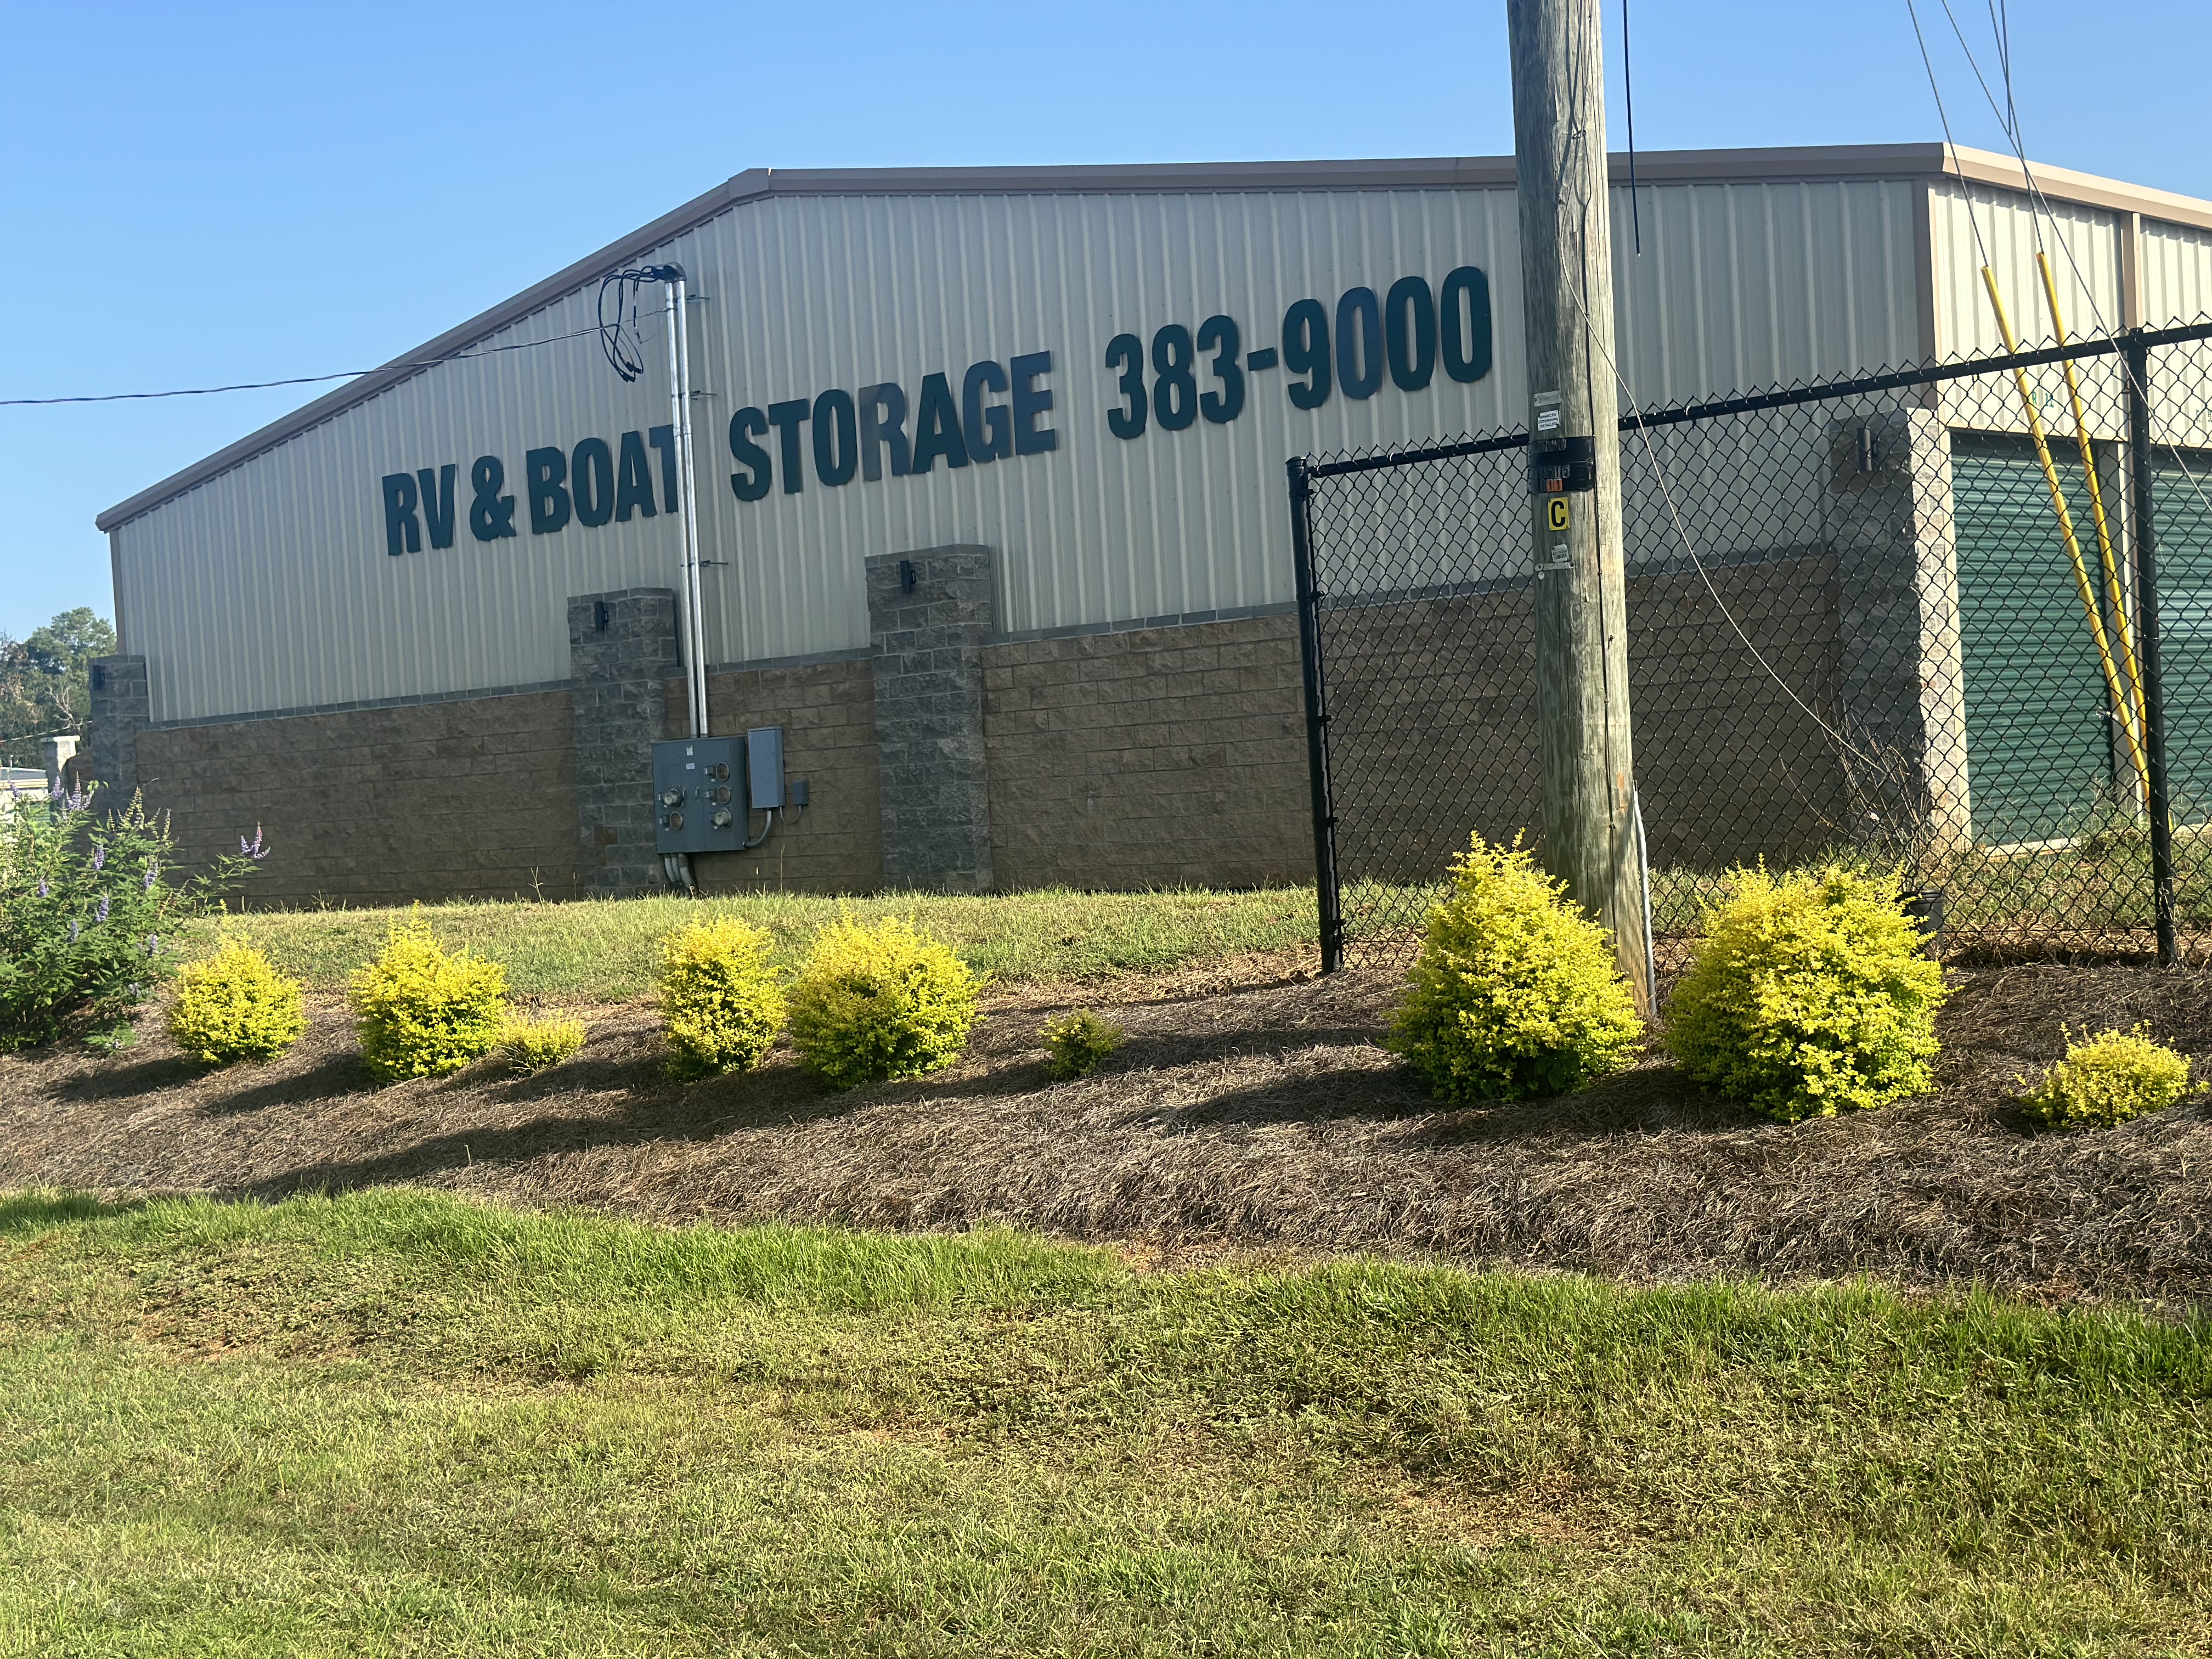 Secure Storage in Greenville, AL